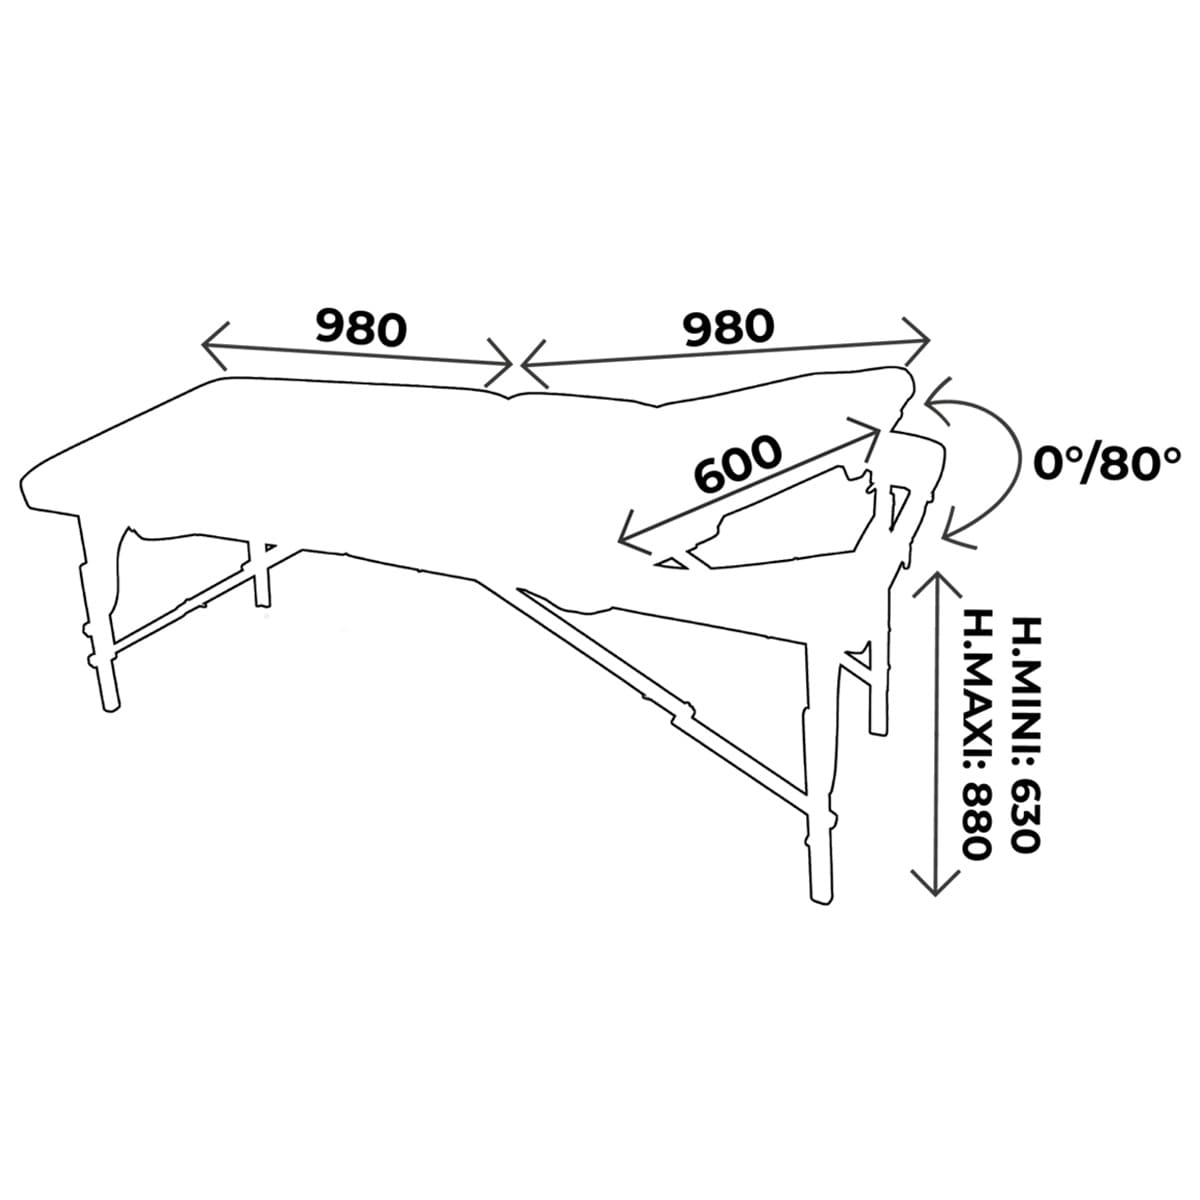 Table de massage pliante 2 parties, en bois, hauteur variable mécaniquement